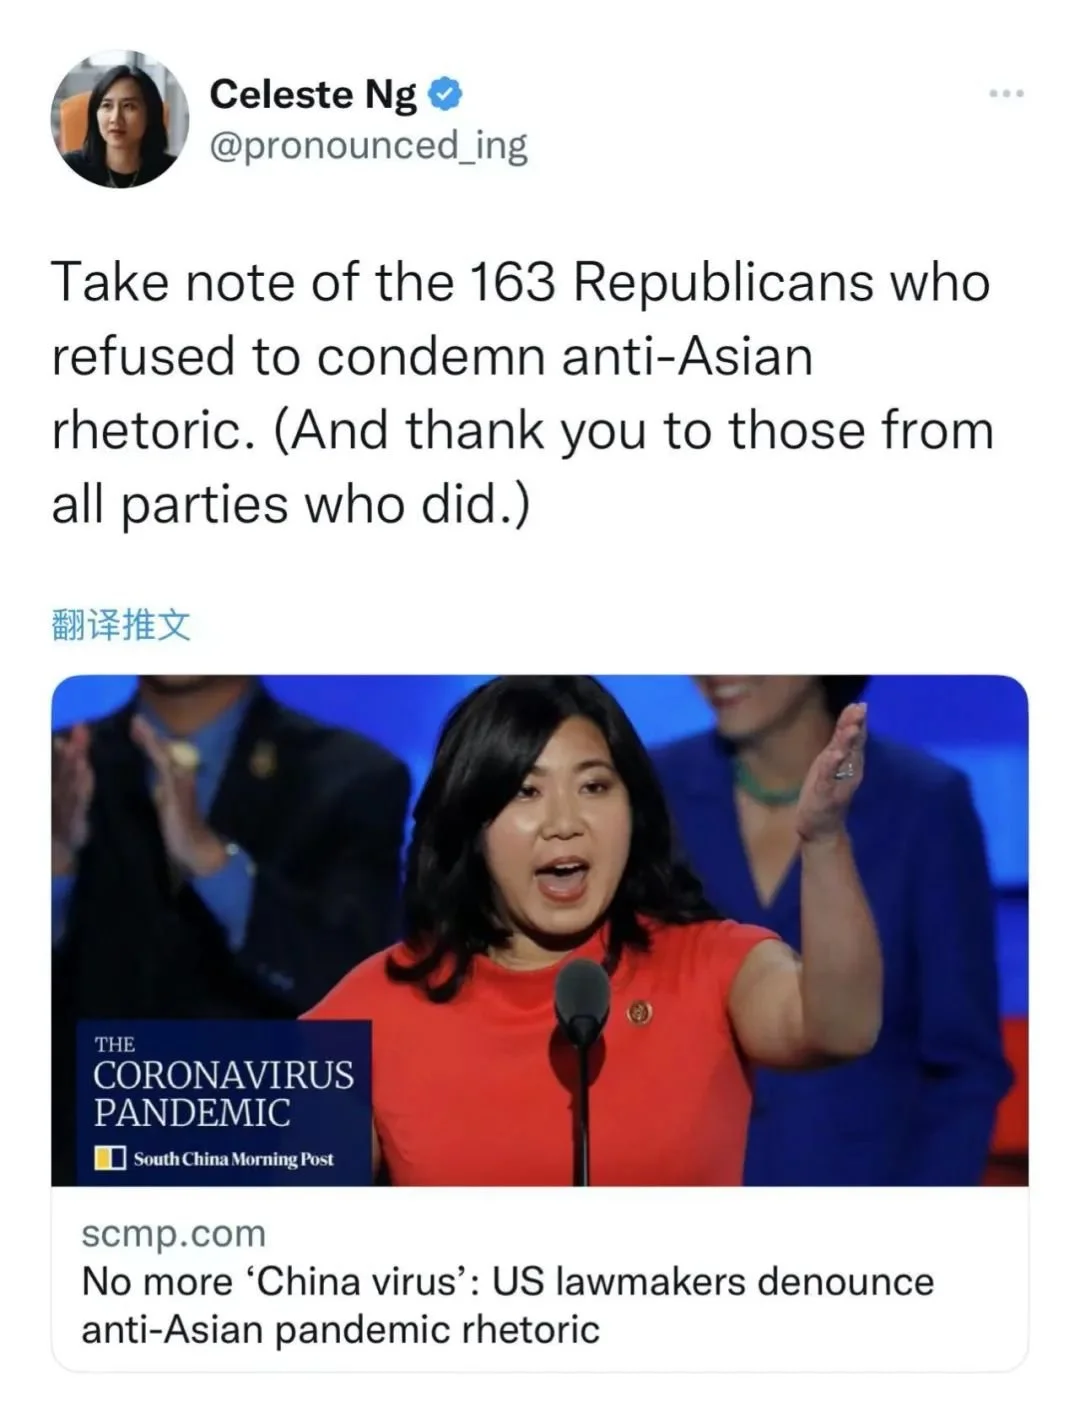 “请大家注意这163名头投票反对反亚裔歧视的共和党议员”